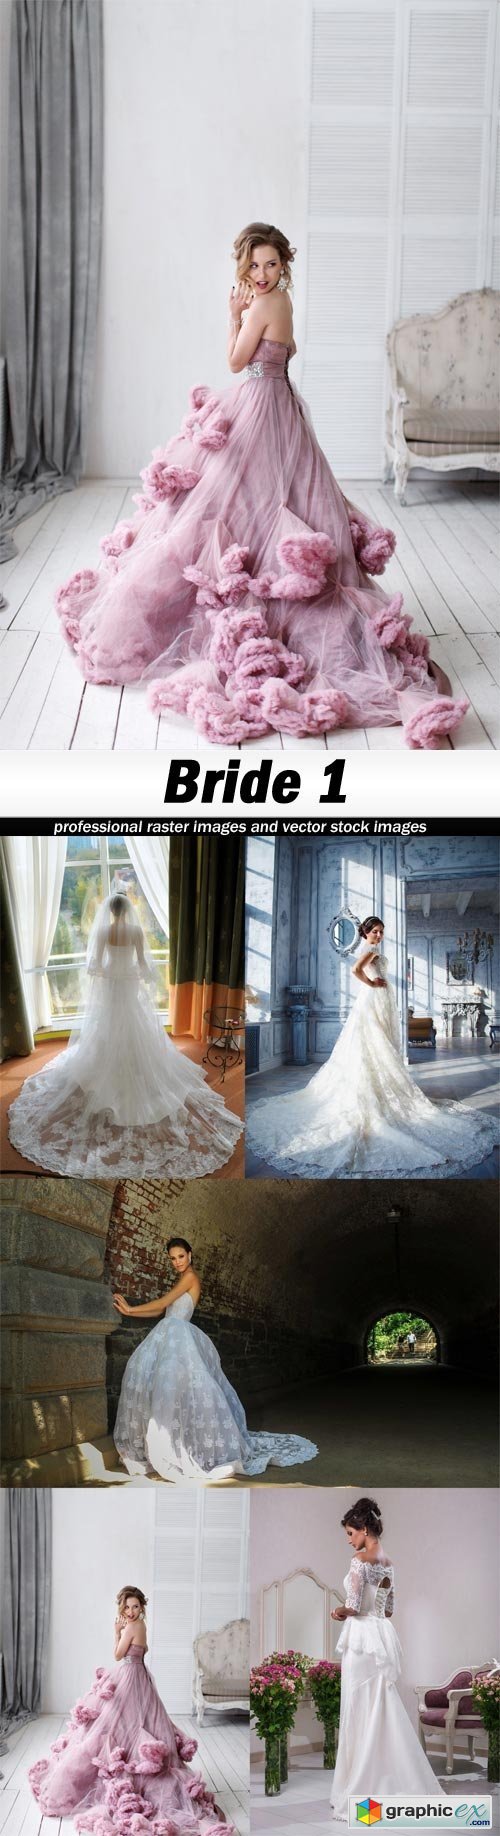 Bride 1-5xJPEGs